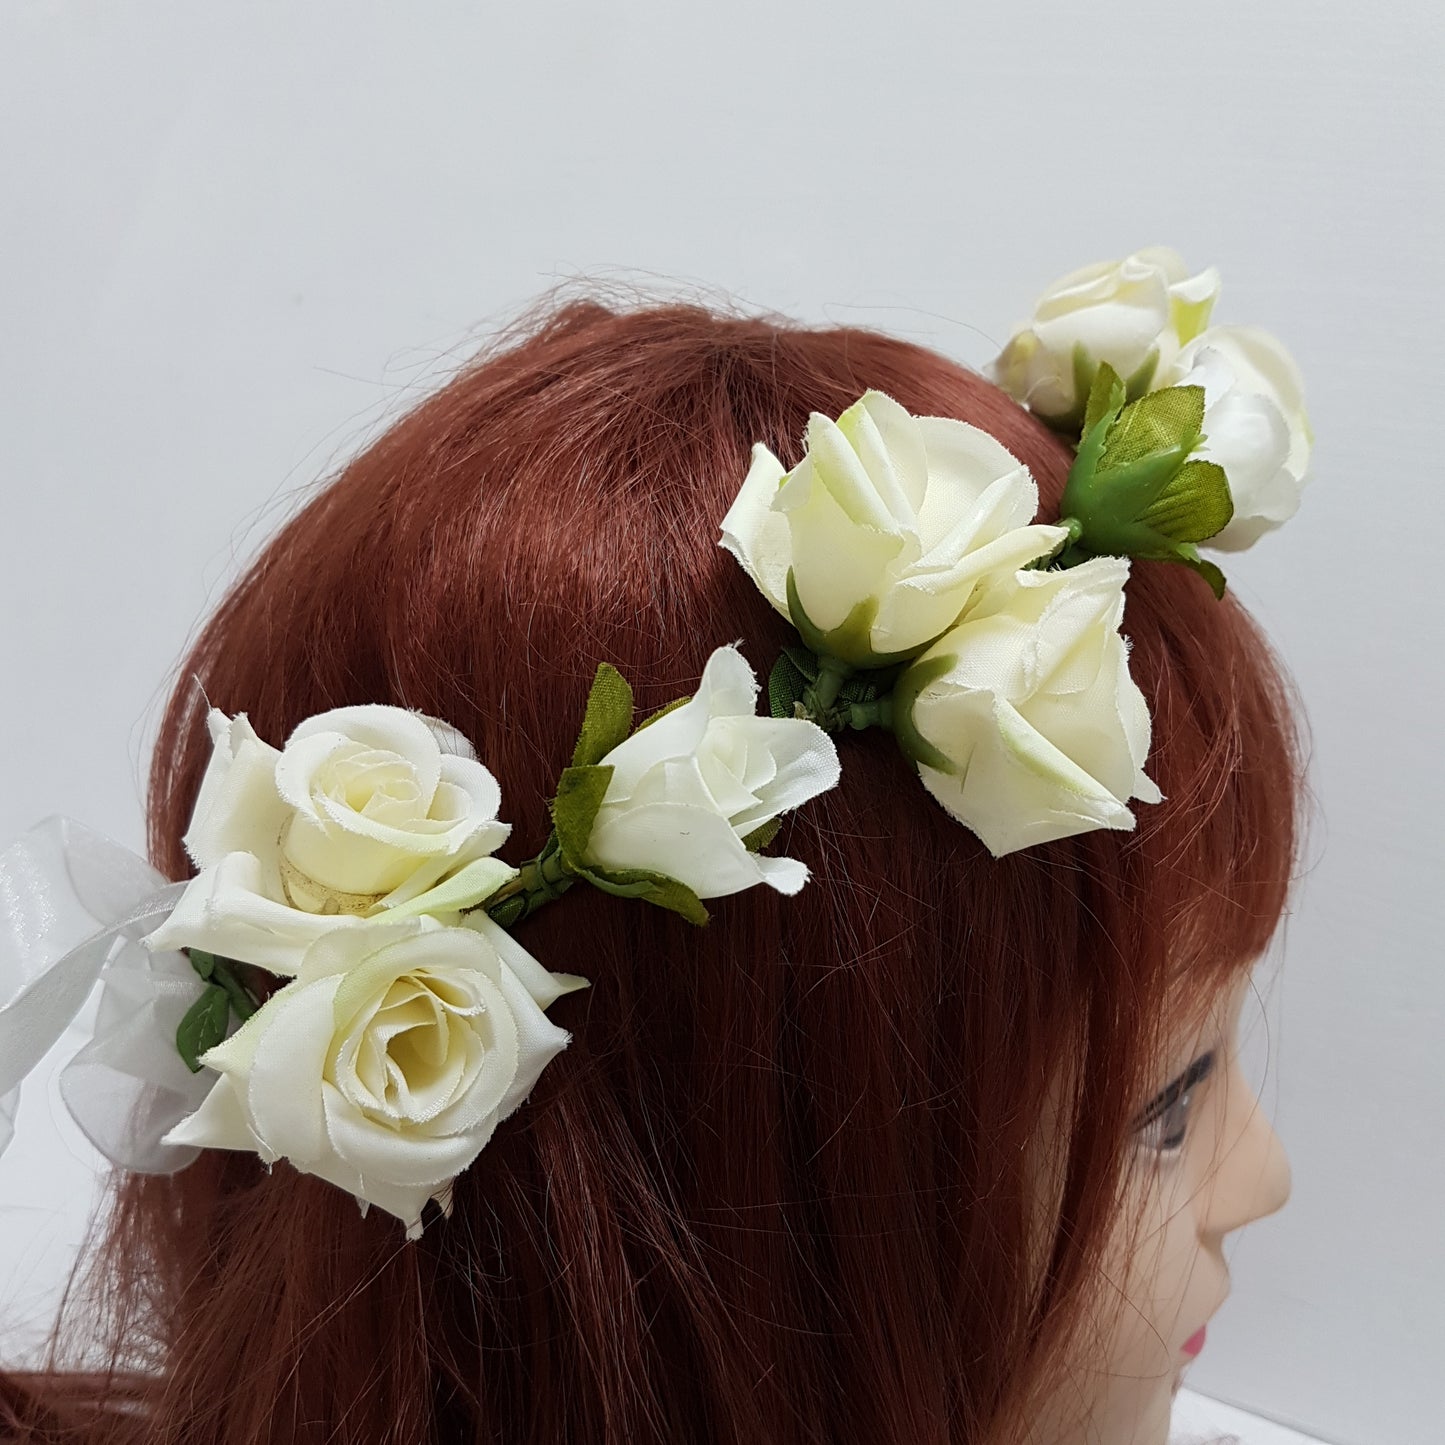 Rose Floral Hair Crown